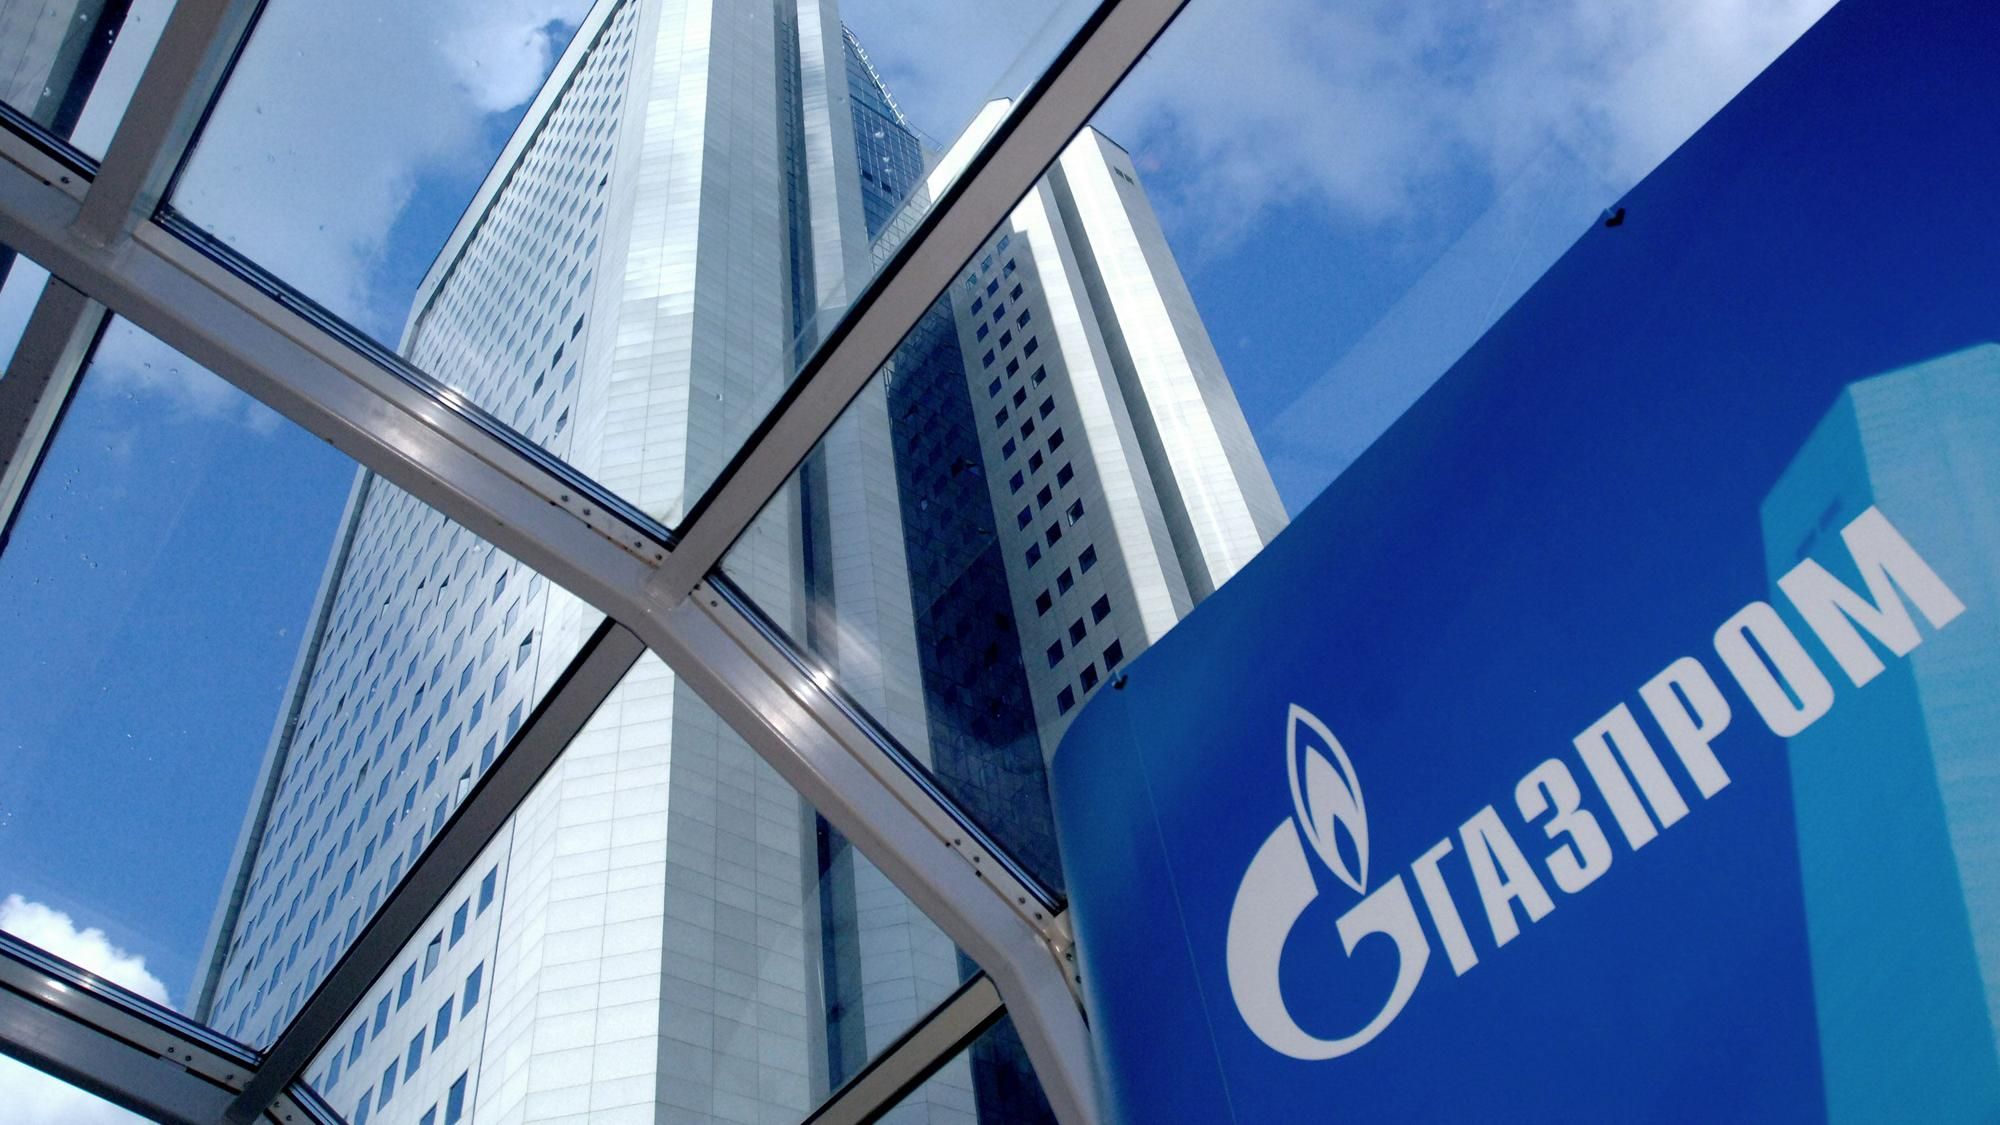 "Газпром" выбросил 2,4 триллиона рублей на ветер, — СМИ